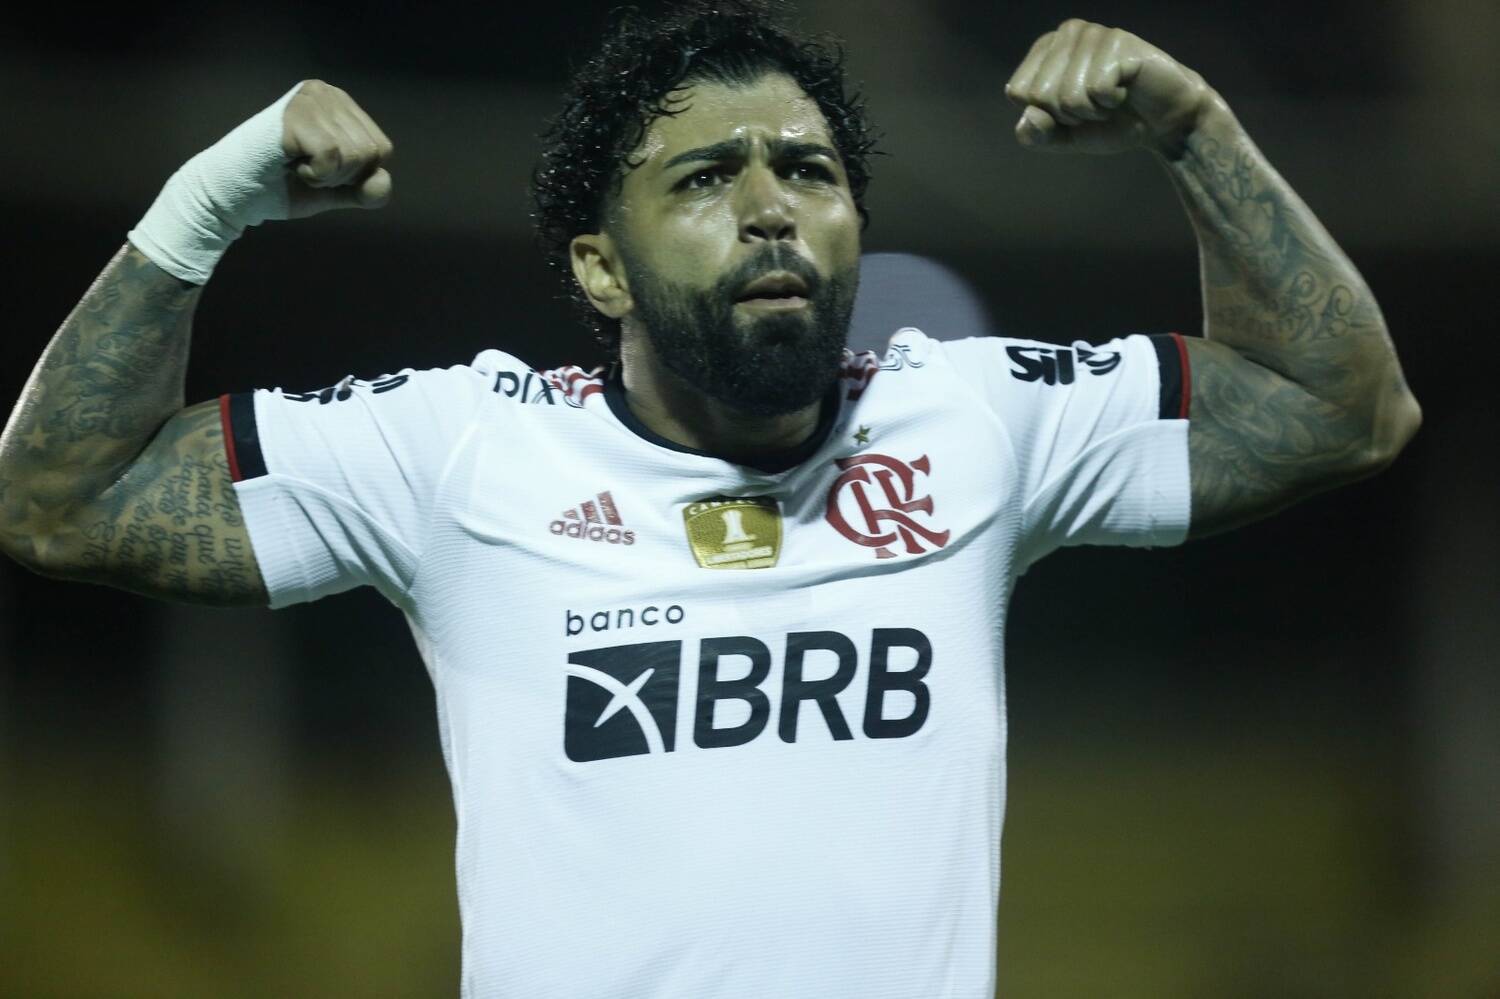 Após boatos de traição, modelo se separa de lateral do Flamengo